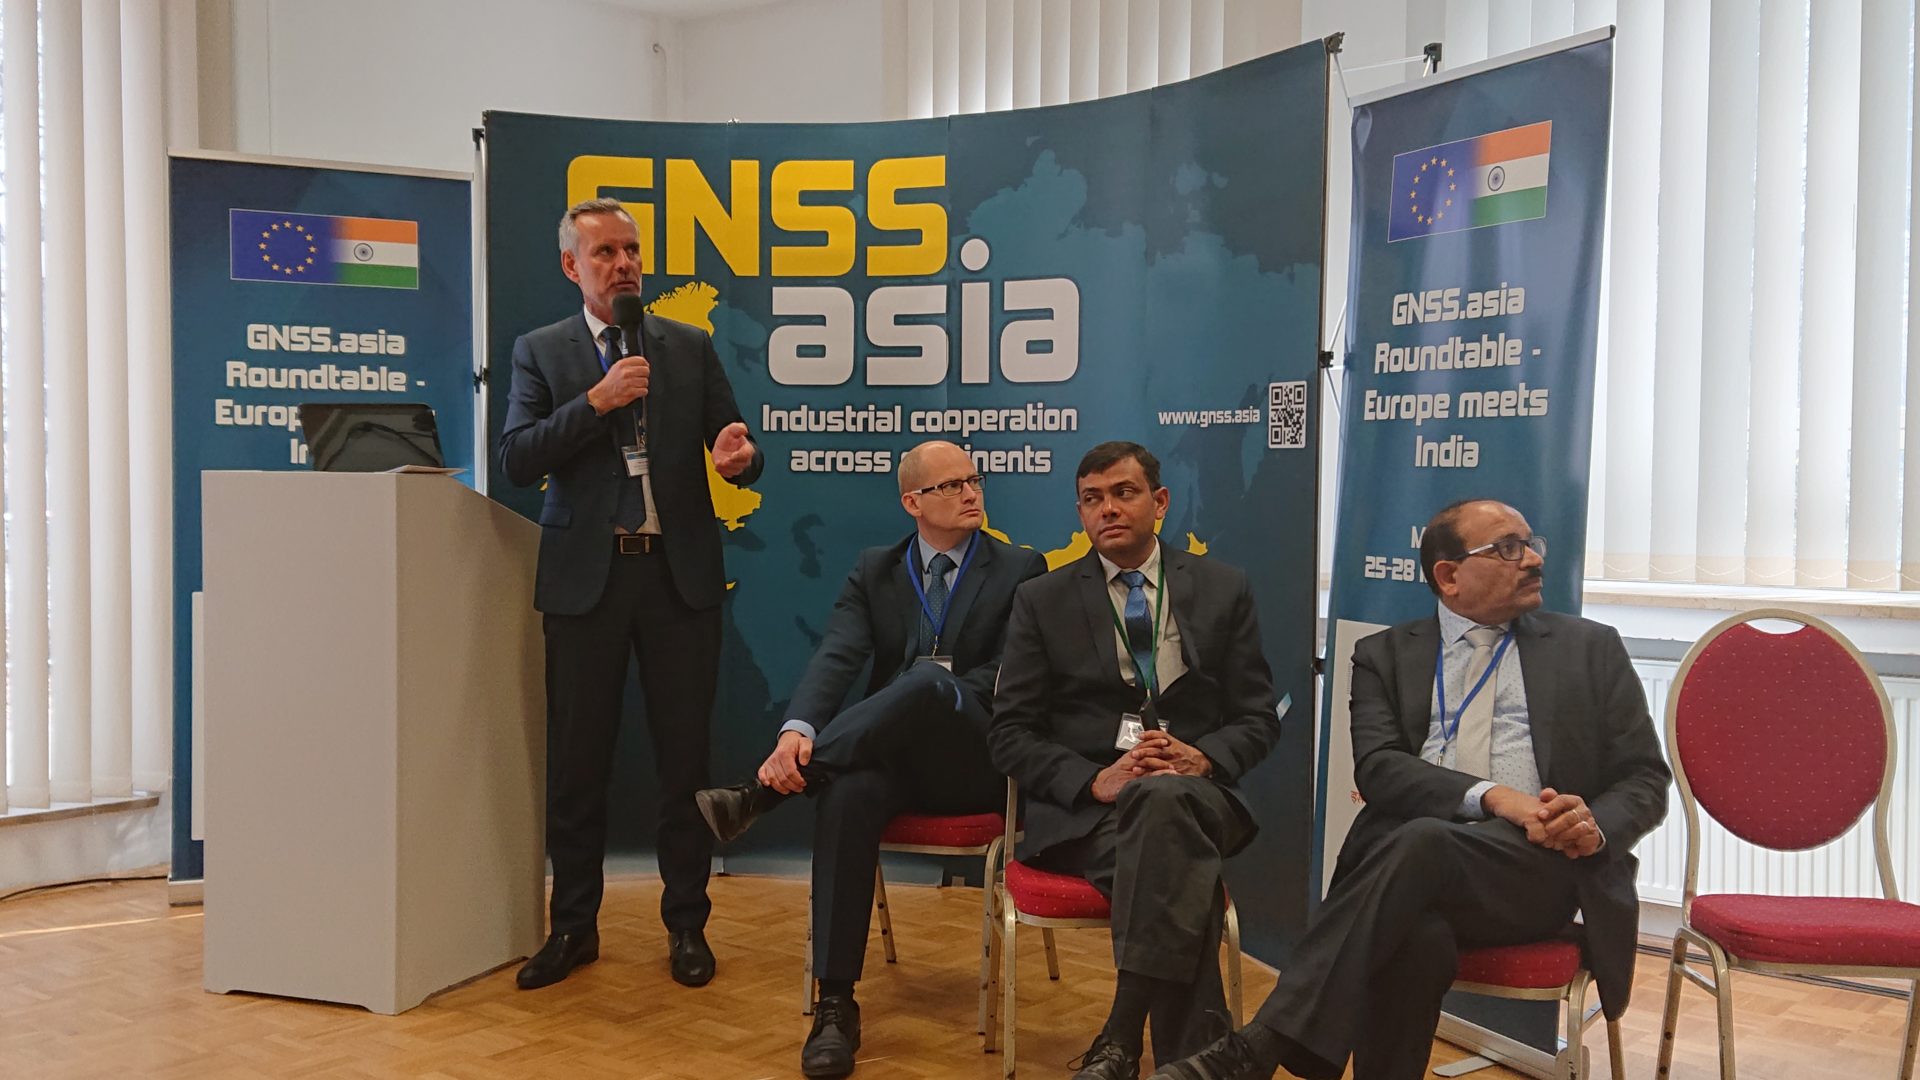 歐印GNSS.asia 圓桌會議@慕尼黑衛星導航高峰會